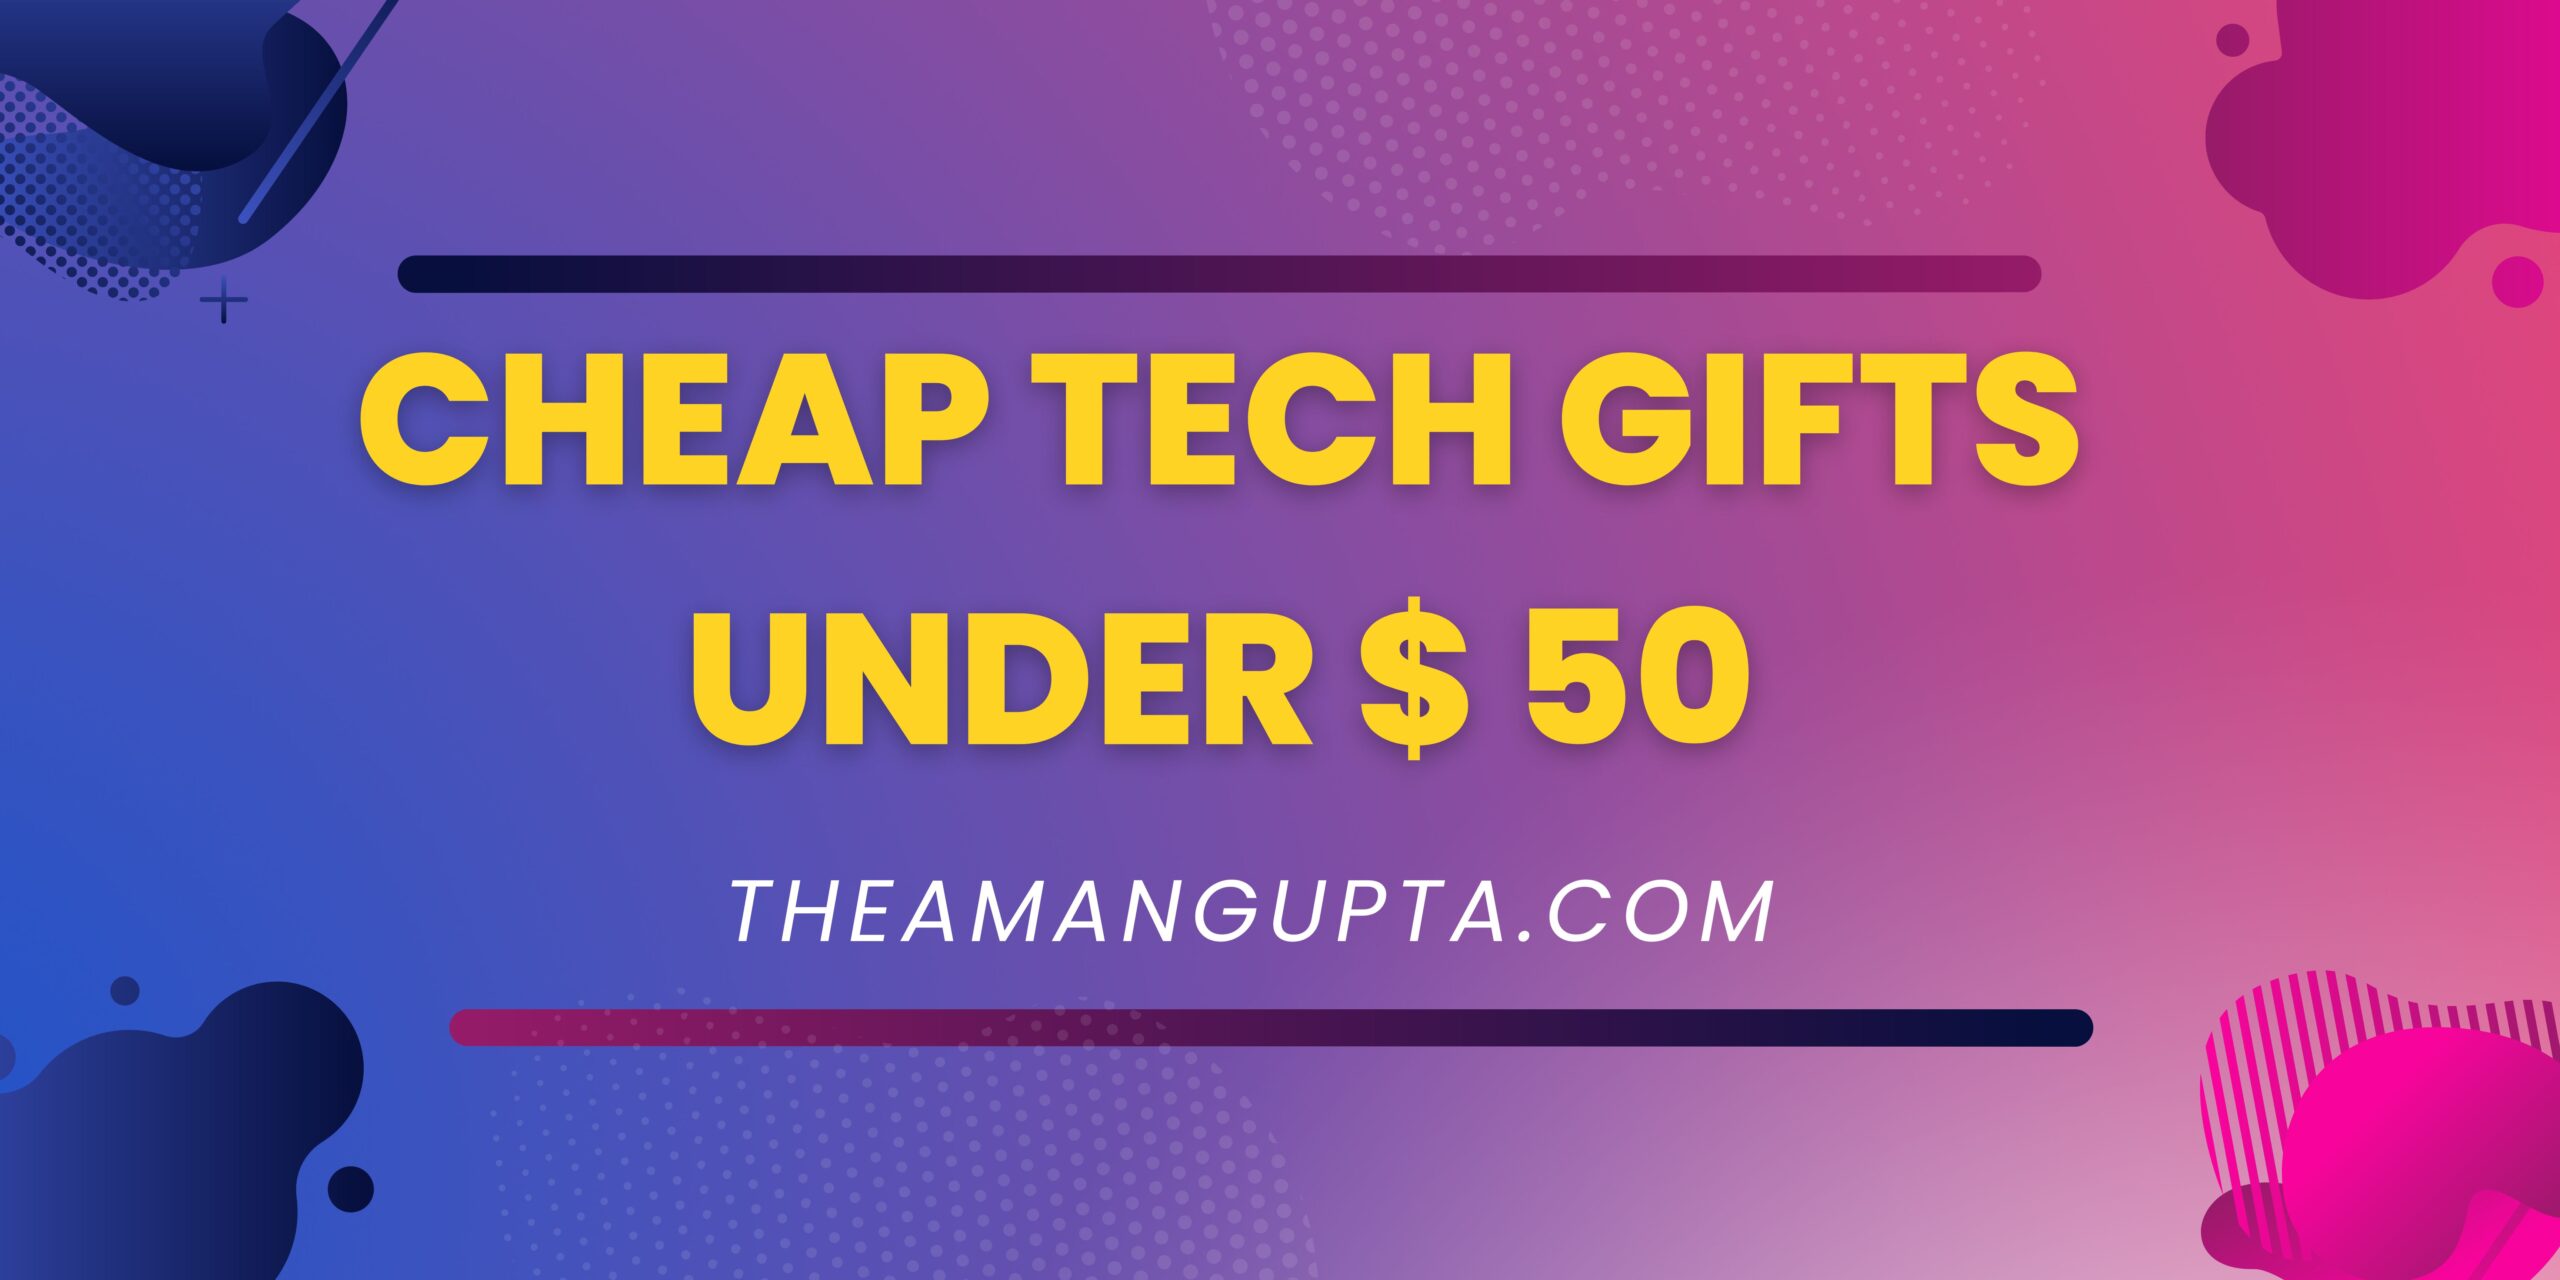 Cheap Tech Gifts Under $ 50|Tech Gifts|Theamangupta|Theamangupta